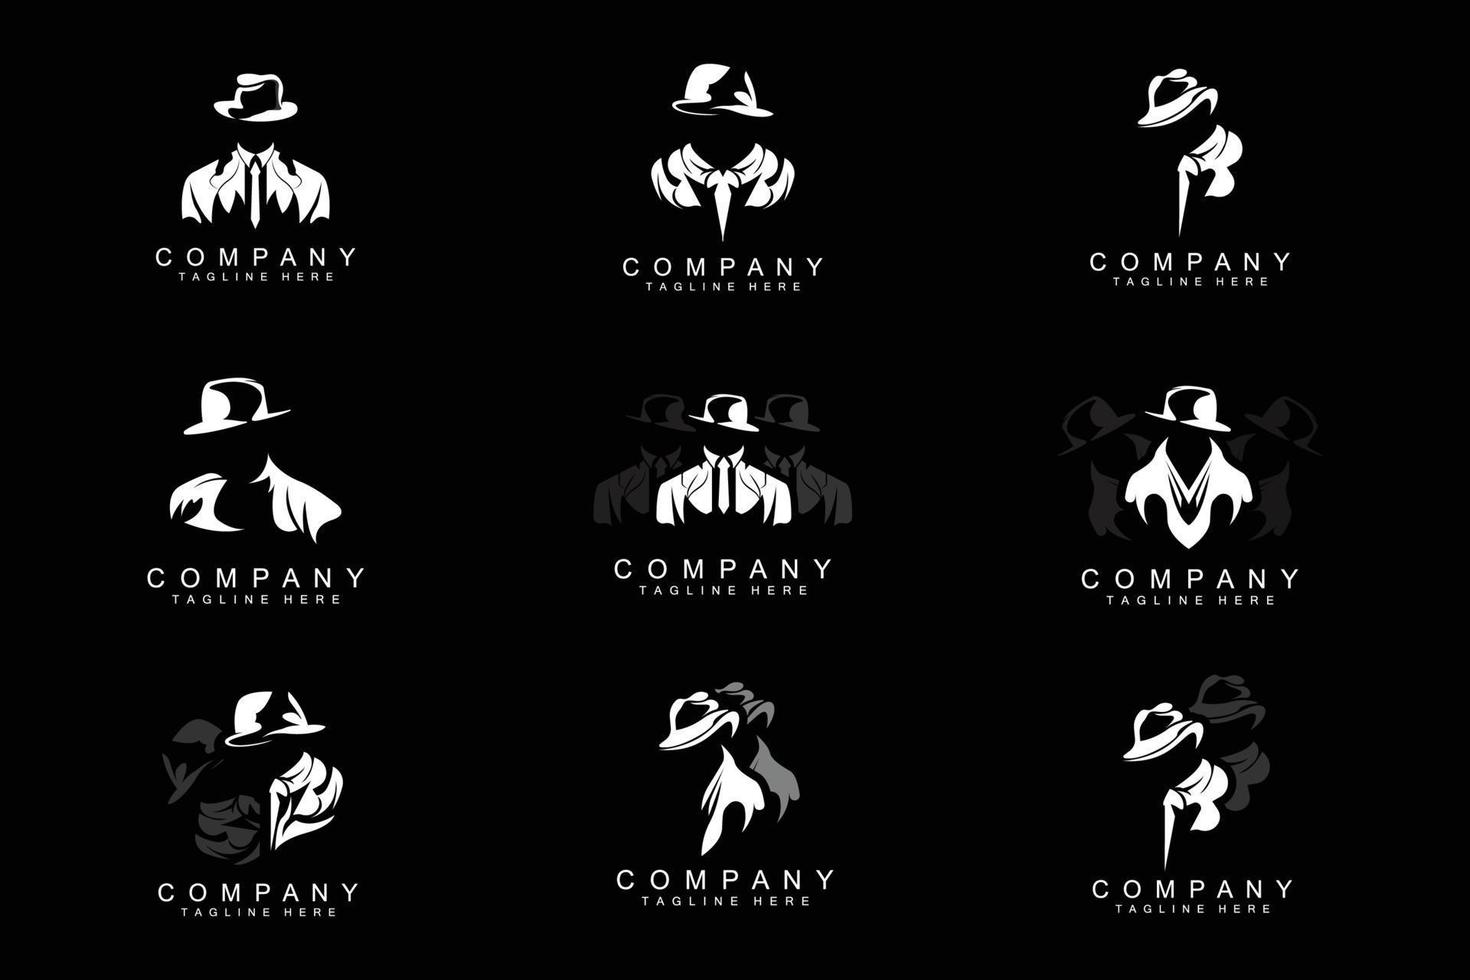 detektiv- man logotyp design, maffia detektiv- mode smoking och hatt illustration vektor, svart man affärsman ikon vektor